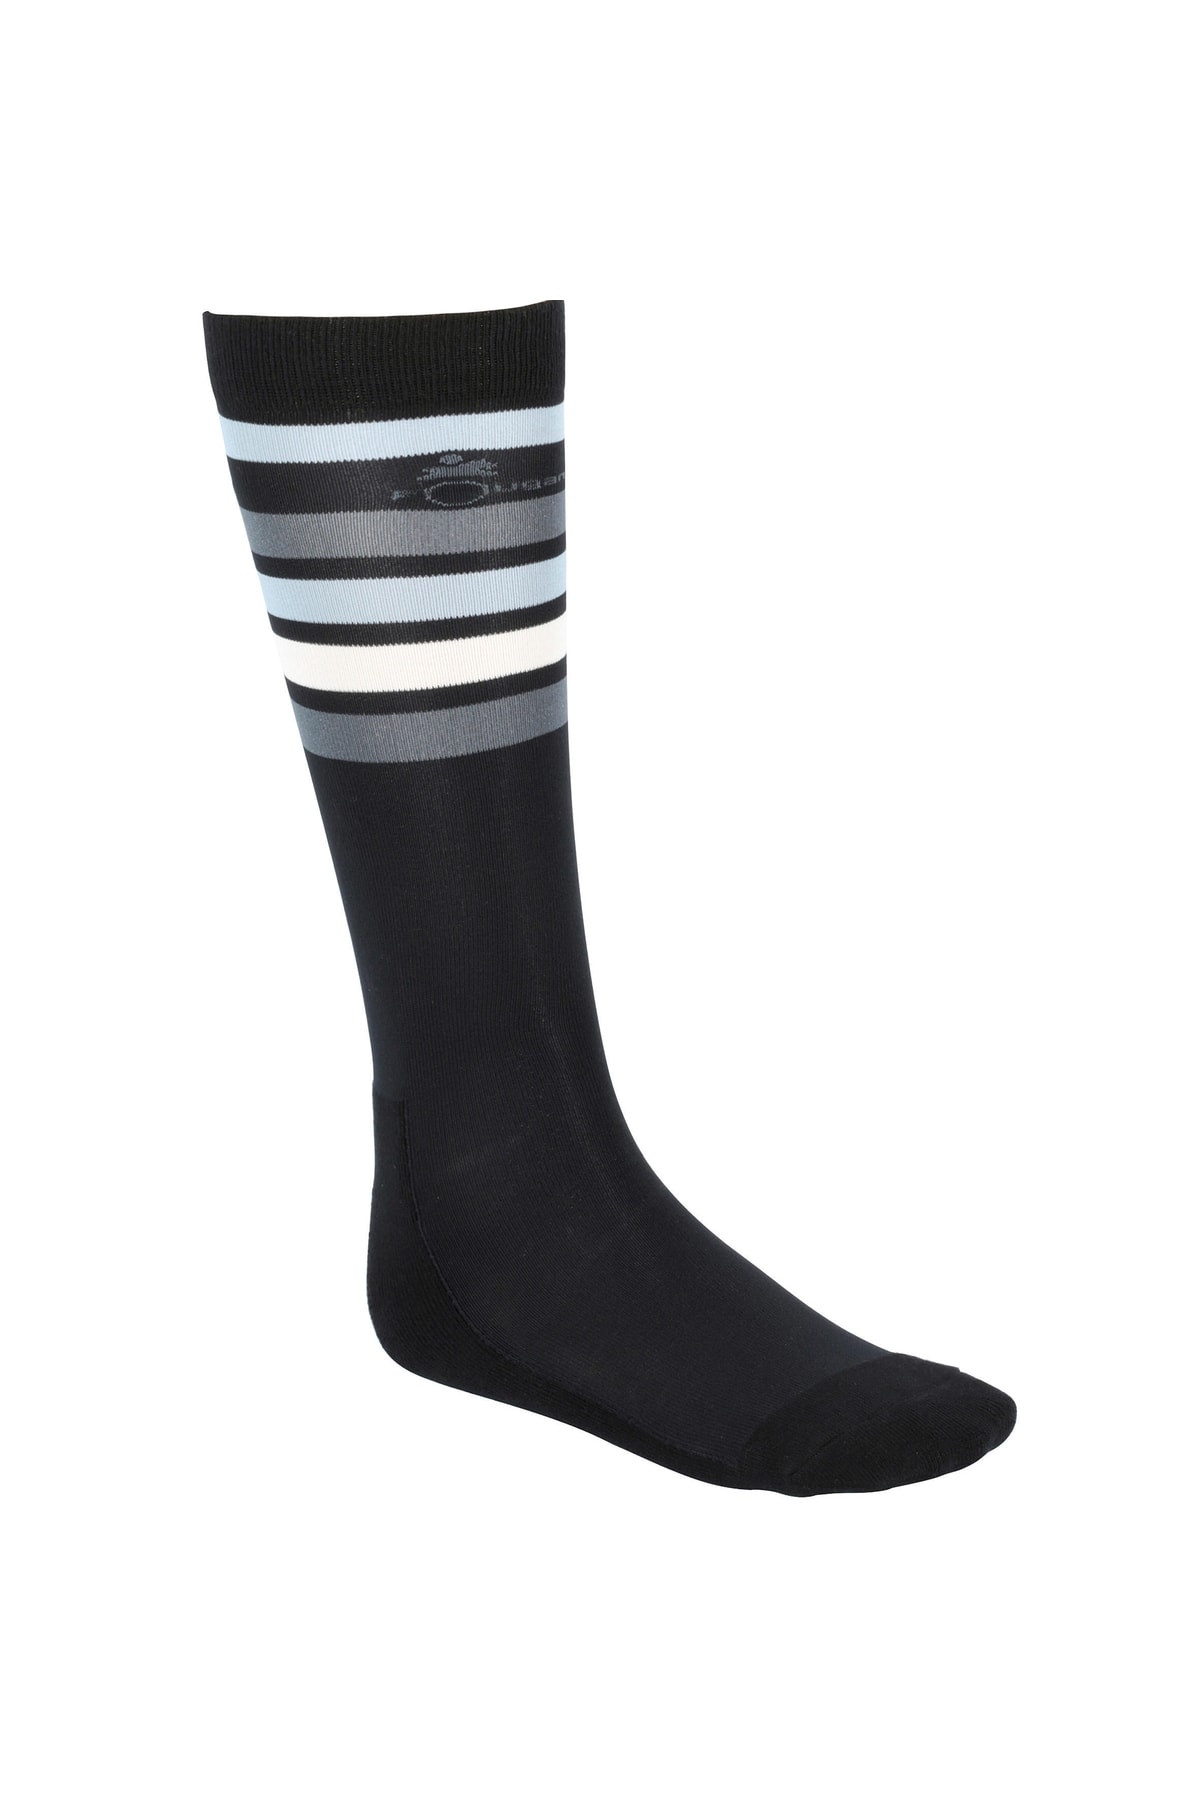 Decathlon Fouganza Yetişkin Binicilik Çorabı - Siyah / Beyaz / Gri Çizgili - Sks100